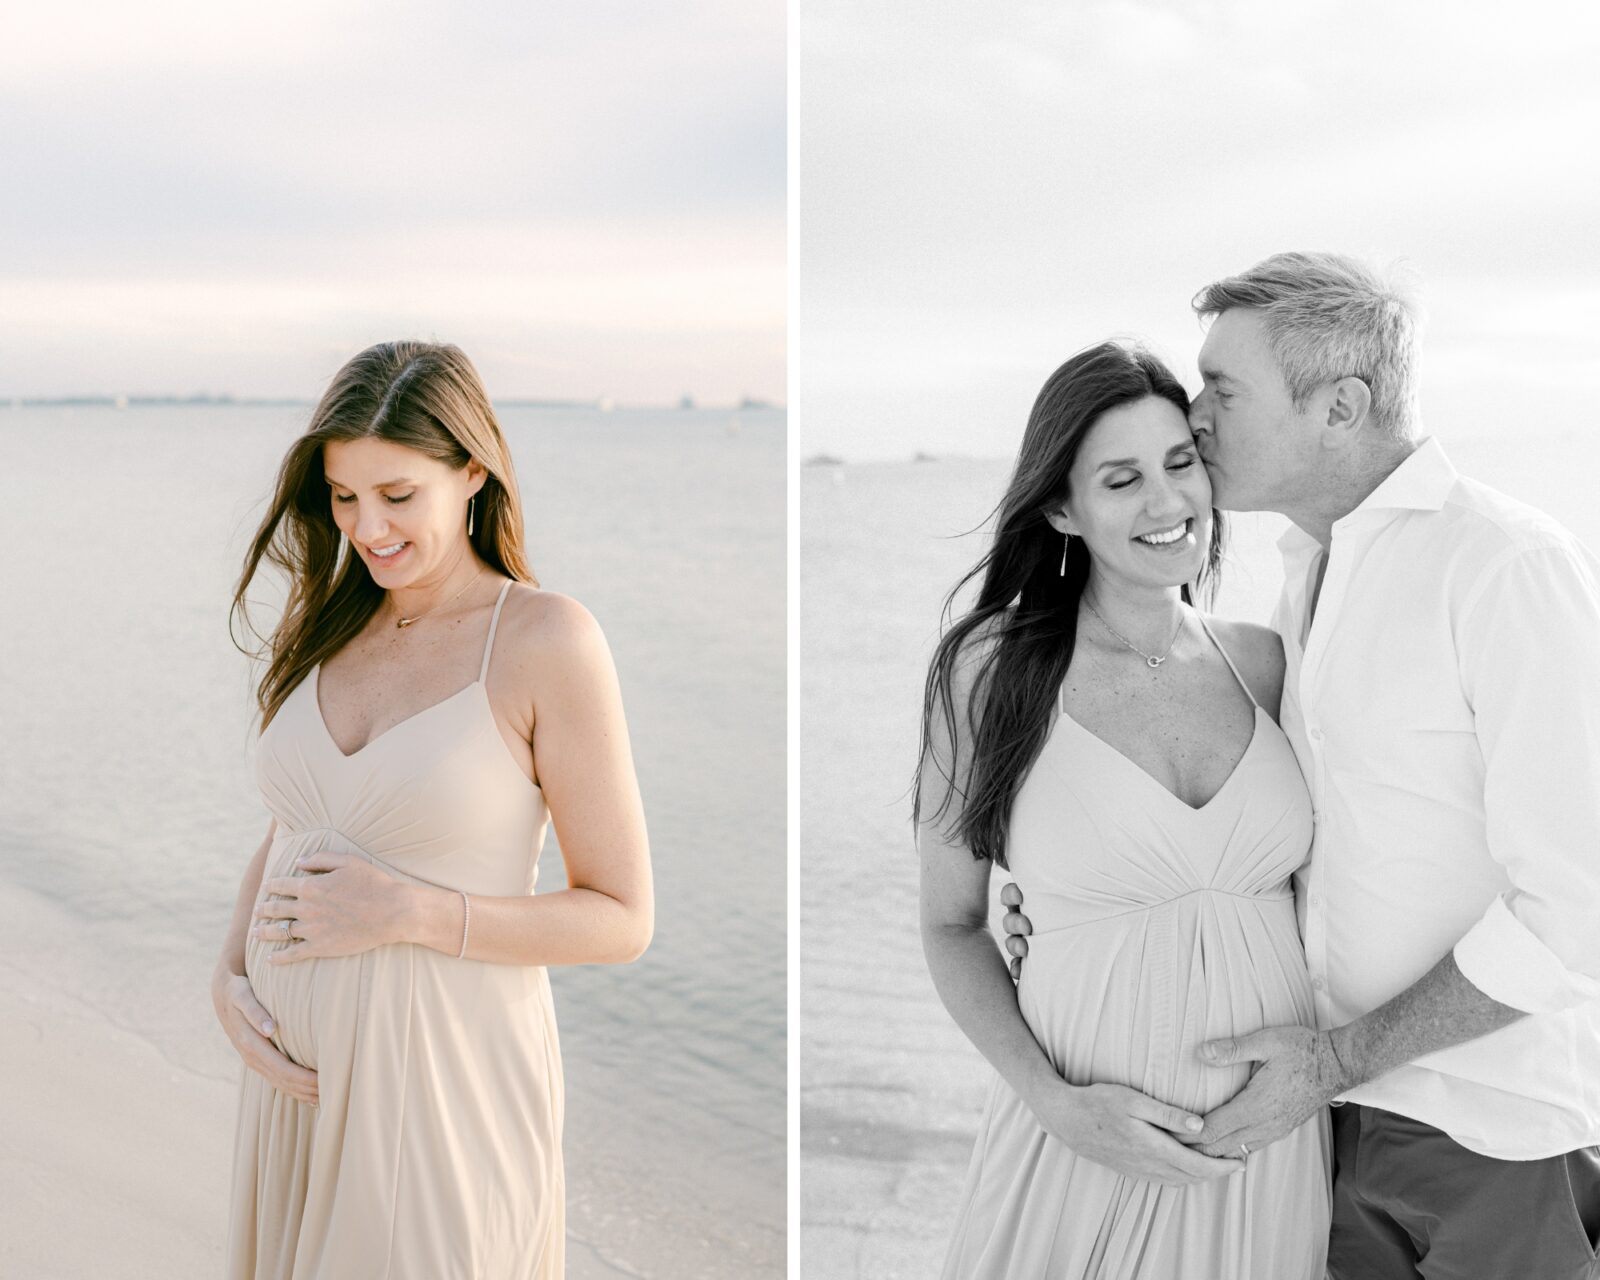 Miami Beach pregnancy photoshoot